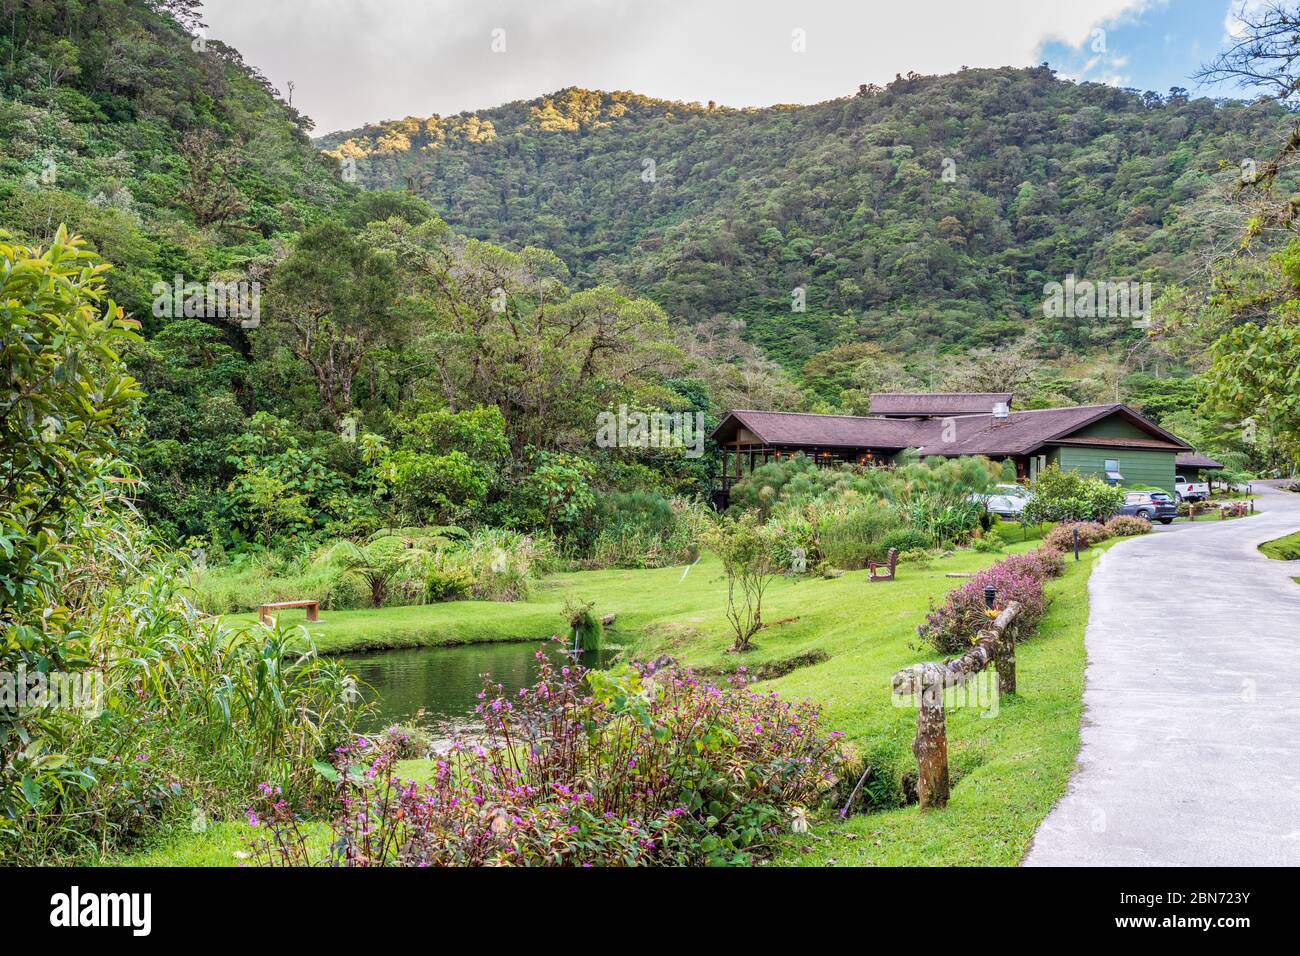 El Silencio Lodge, Bajos del Toro, Costa Rica Stock Photo